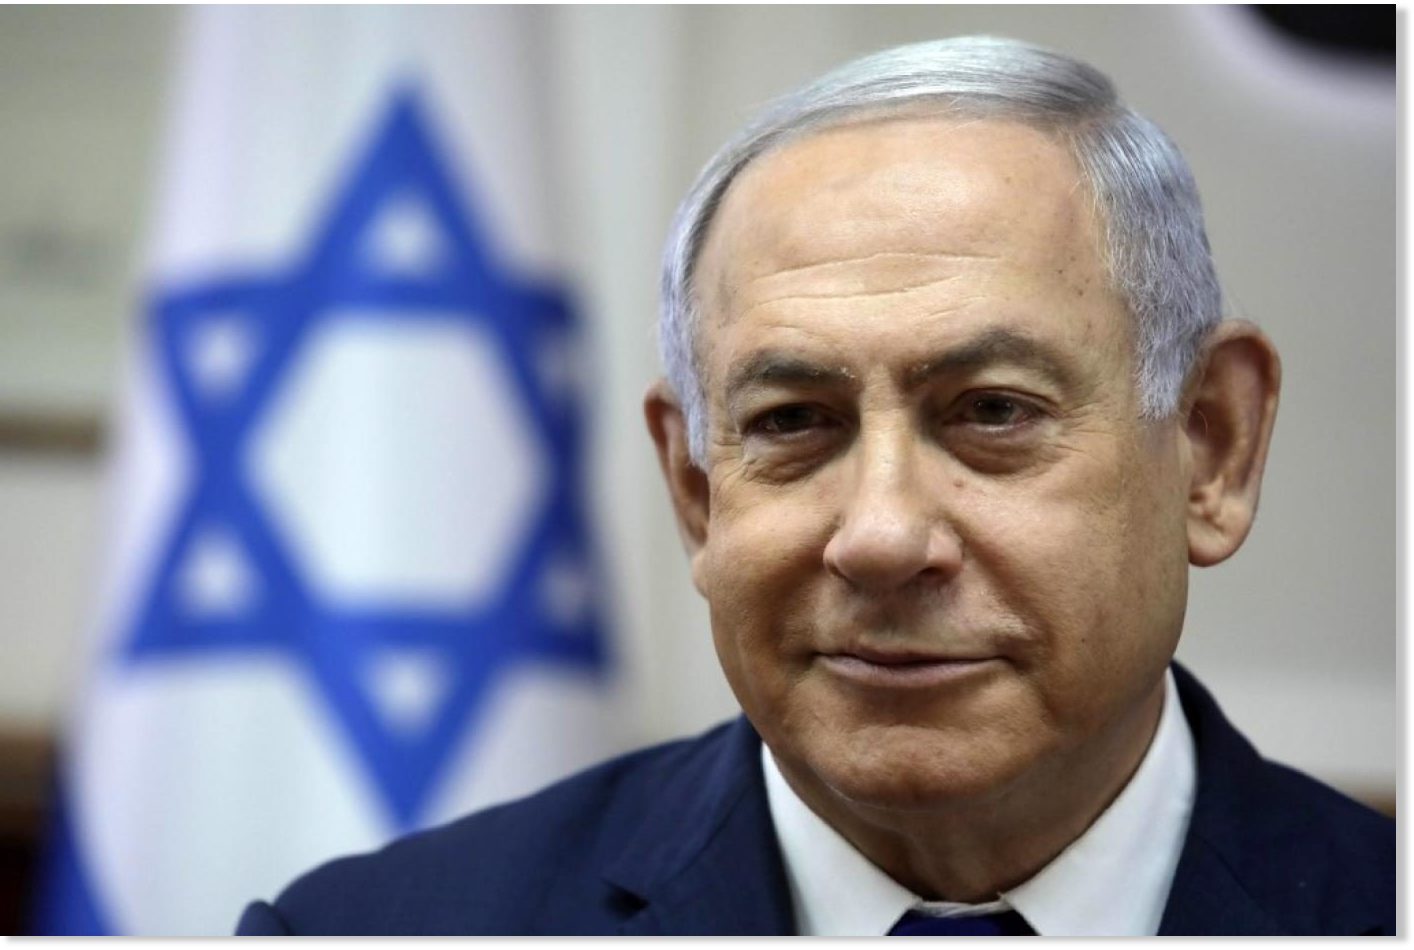 Γαβριήλ Χαρίτος: Δικαστικός συμβιβασμός για λόγους δημοσίους συμφέροντος οι υποθέσεις περί χρηματισμού του Νετανιάχου στο Ισραήλ